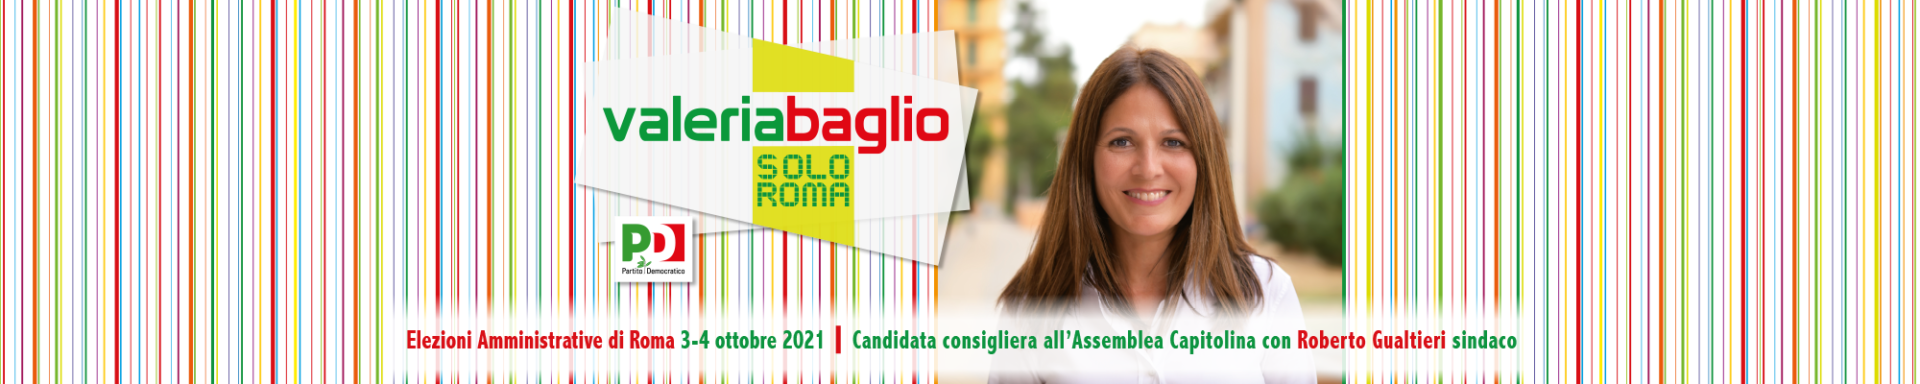 Elezioni Roma 2021: la campagna elettorale è iniziata